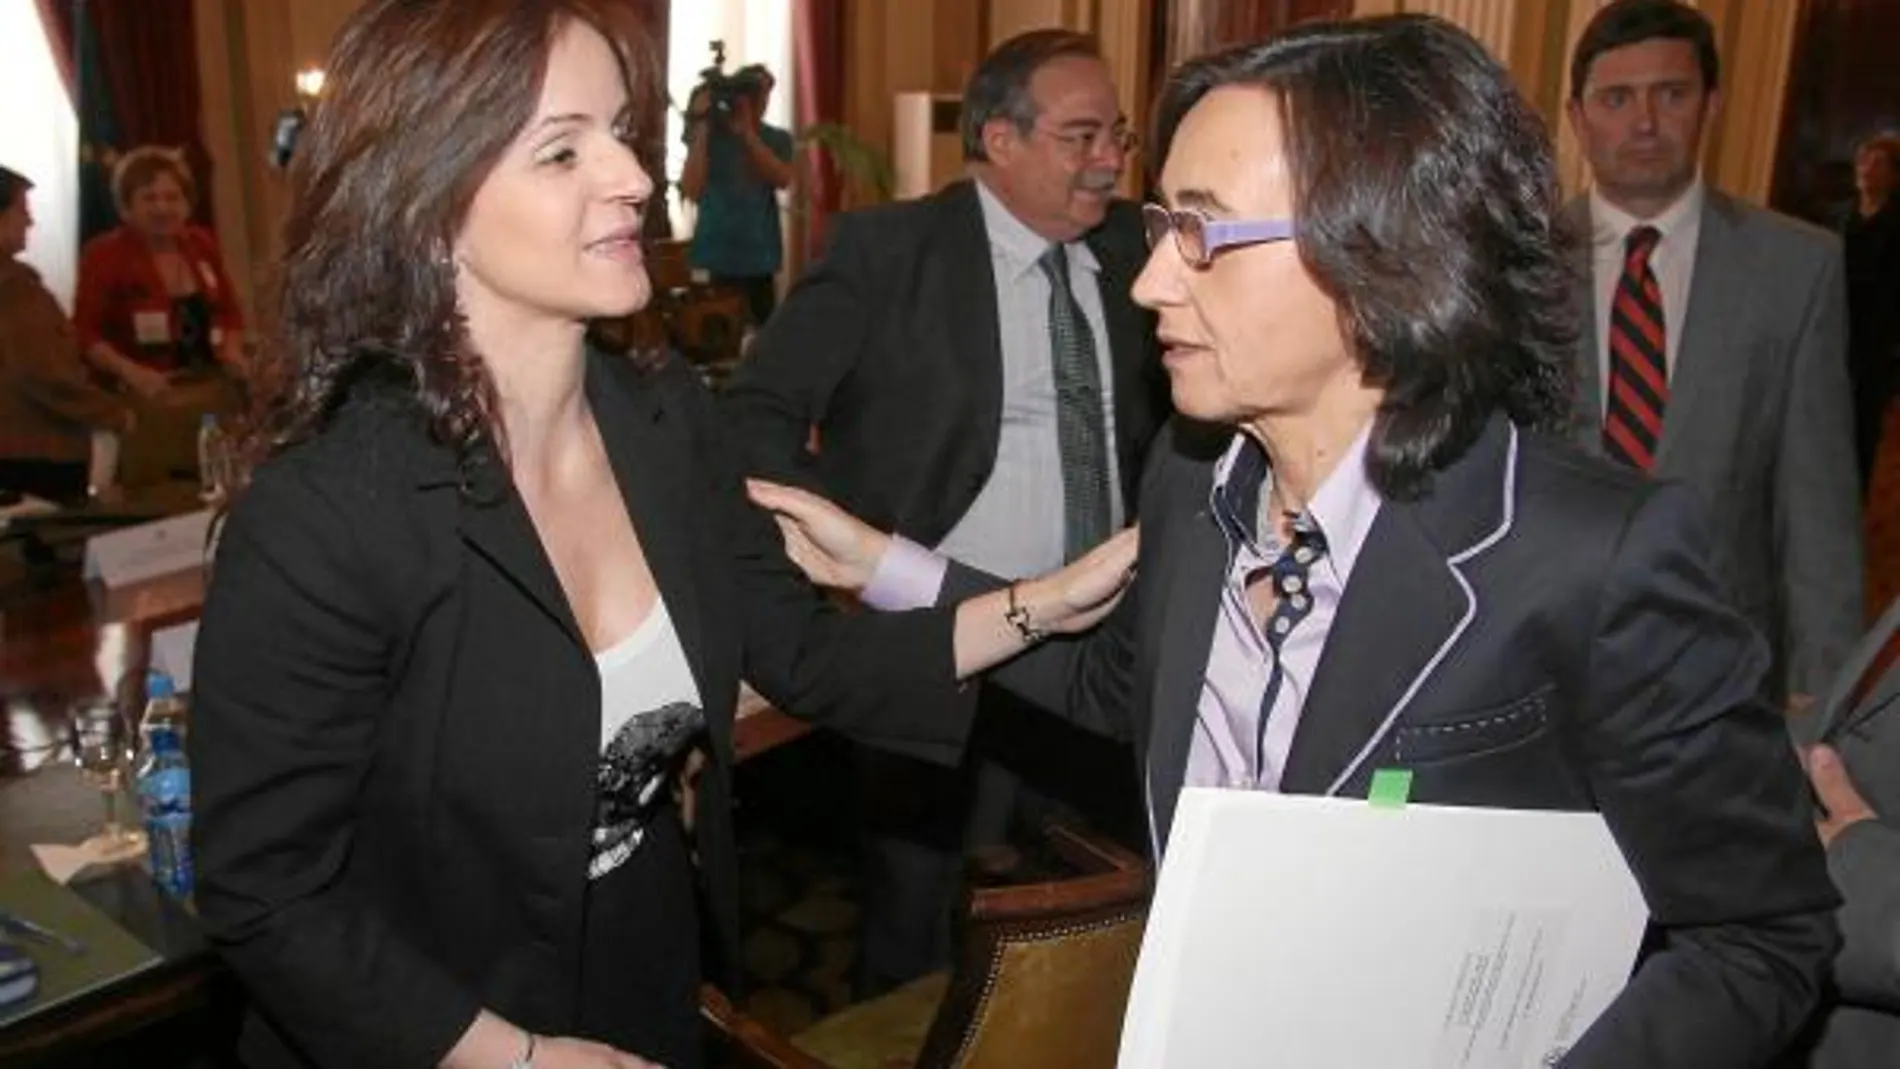 La consejera Silvia Clemente saluda a Rosa Aguilar, antes de comenzar el Consejo Consultivo